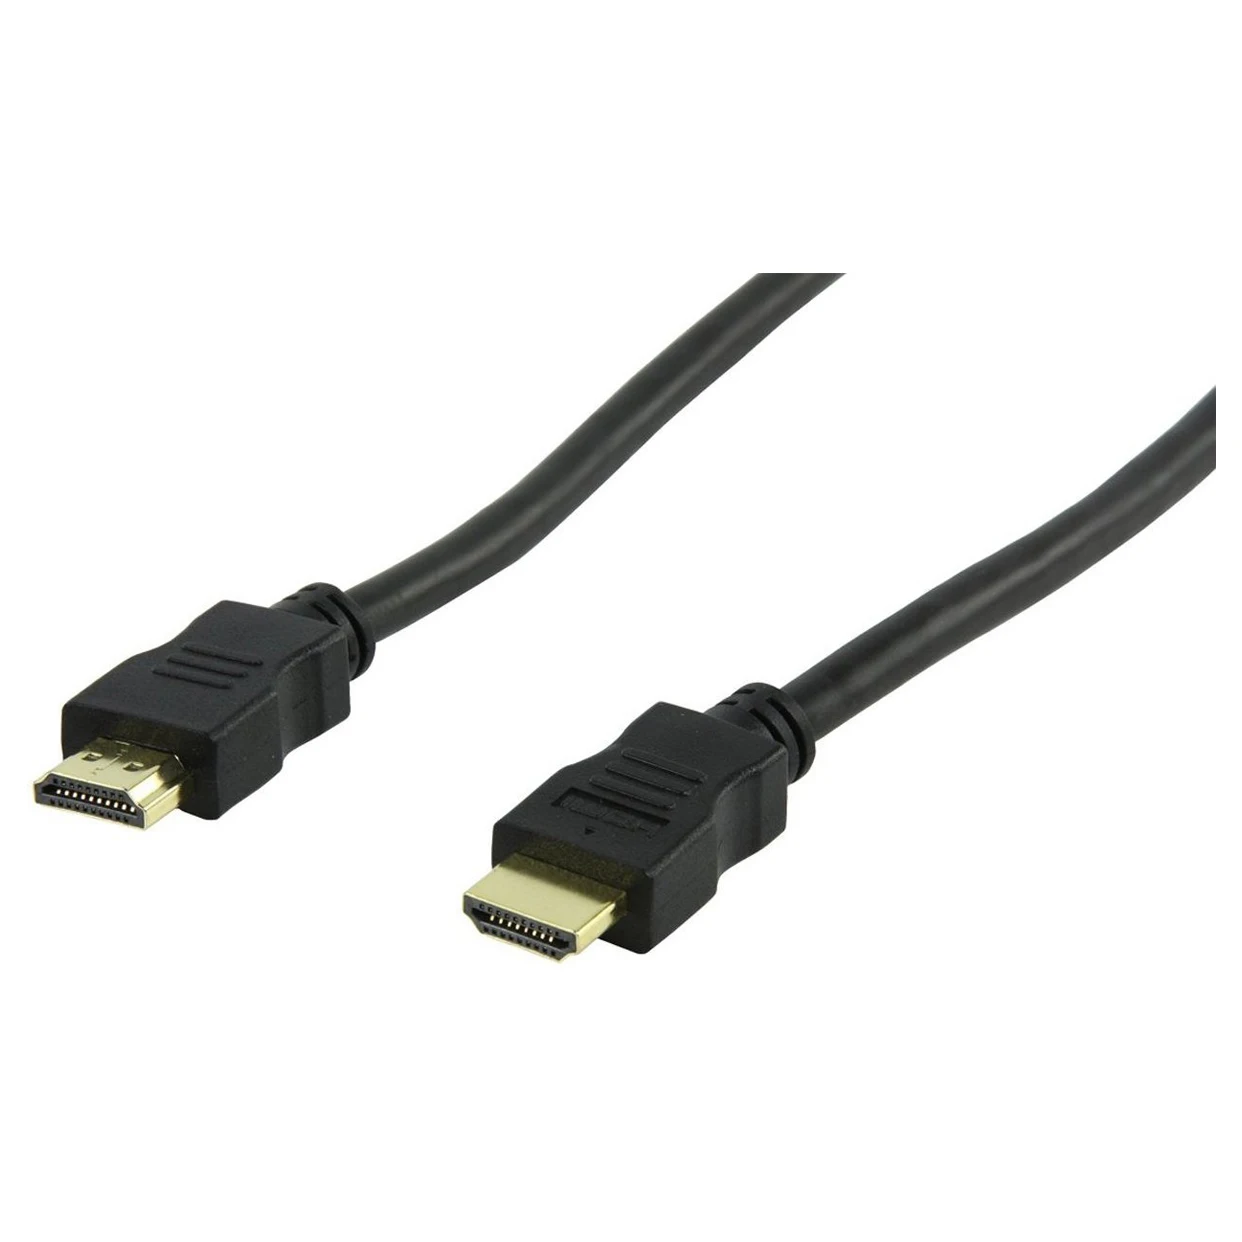 Топ предложения кабель-5503-20-20 метров HDMI кабель, черный